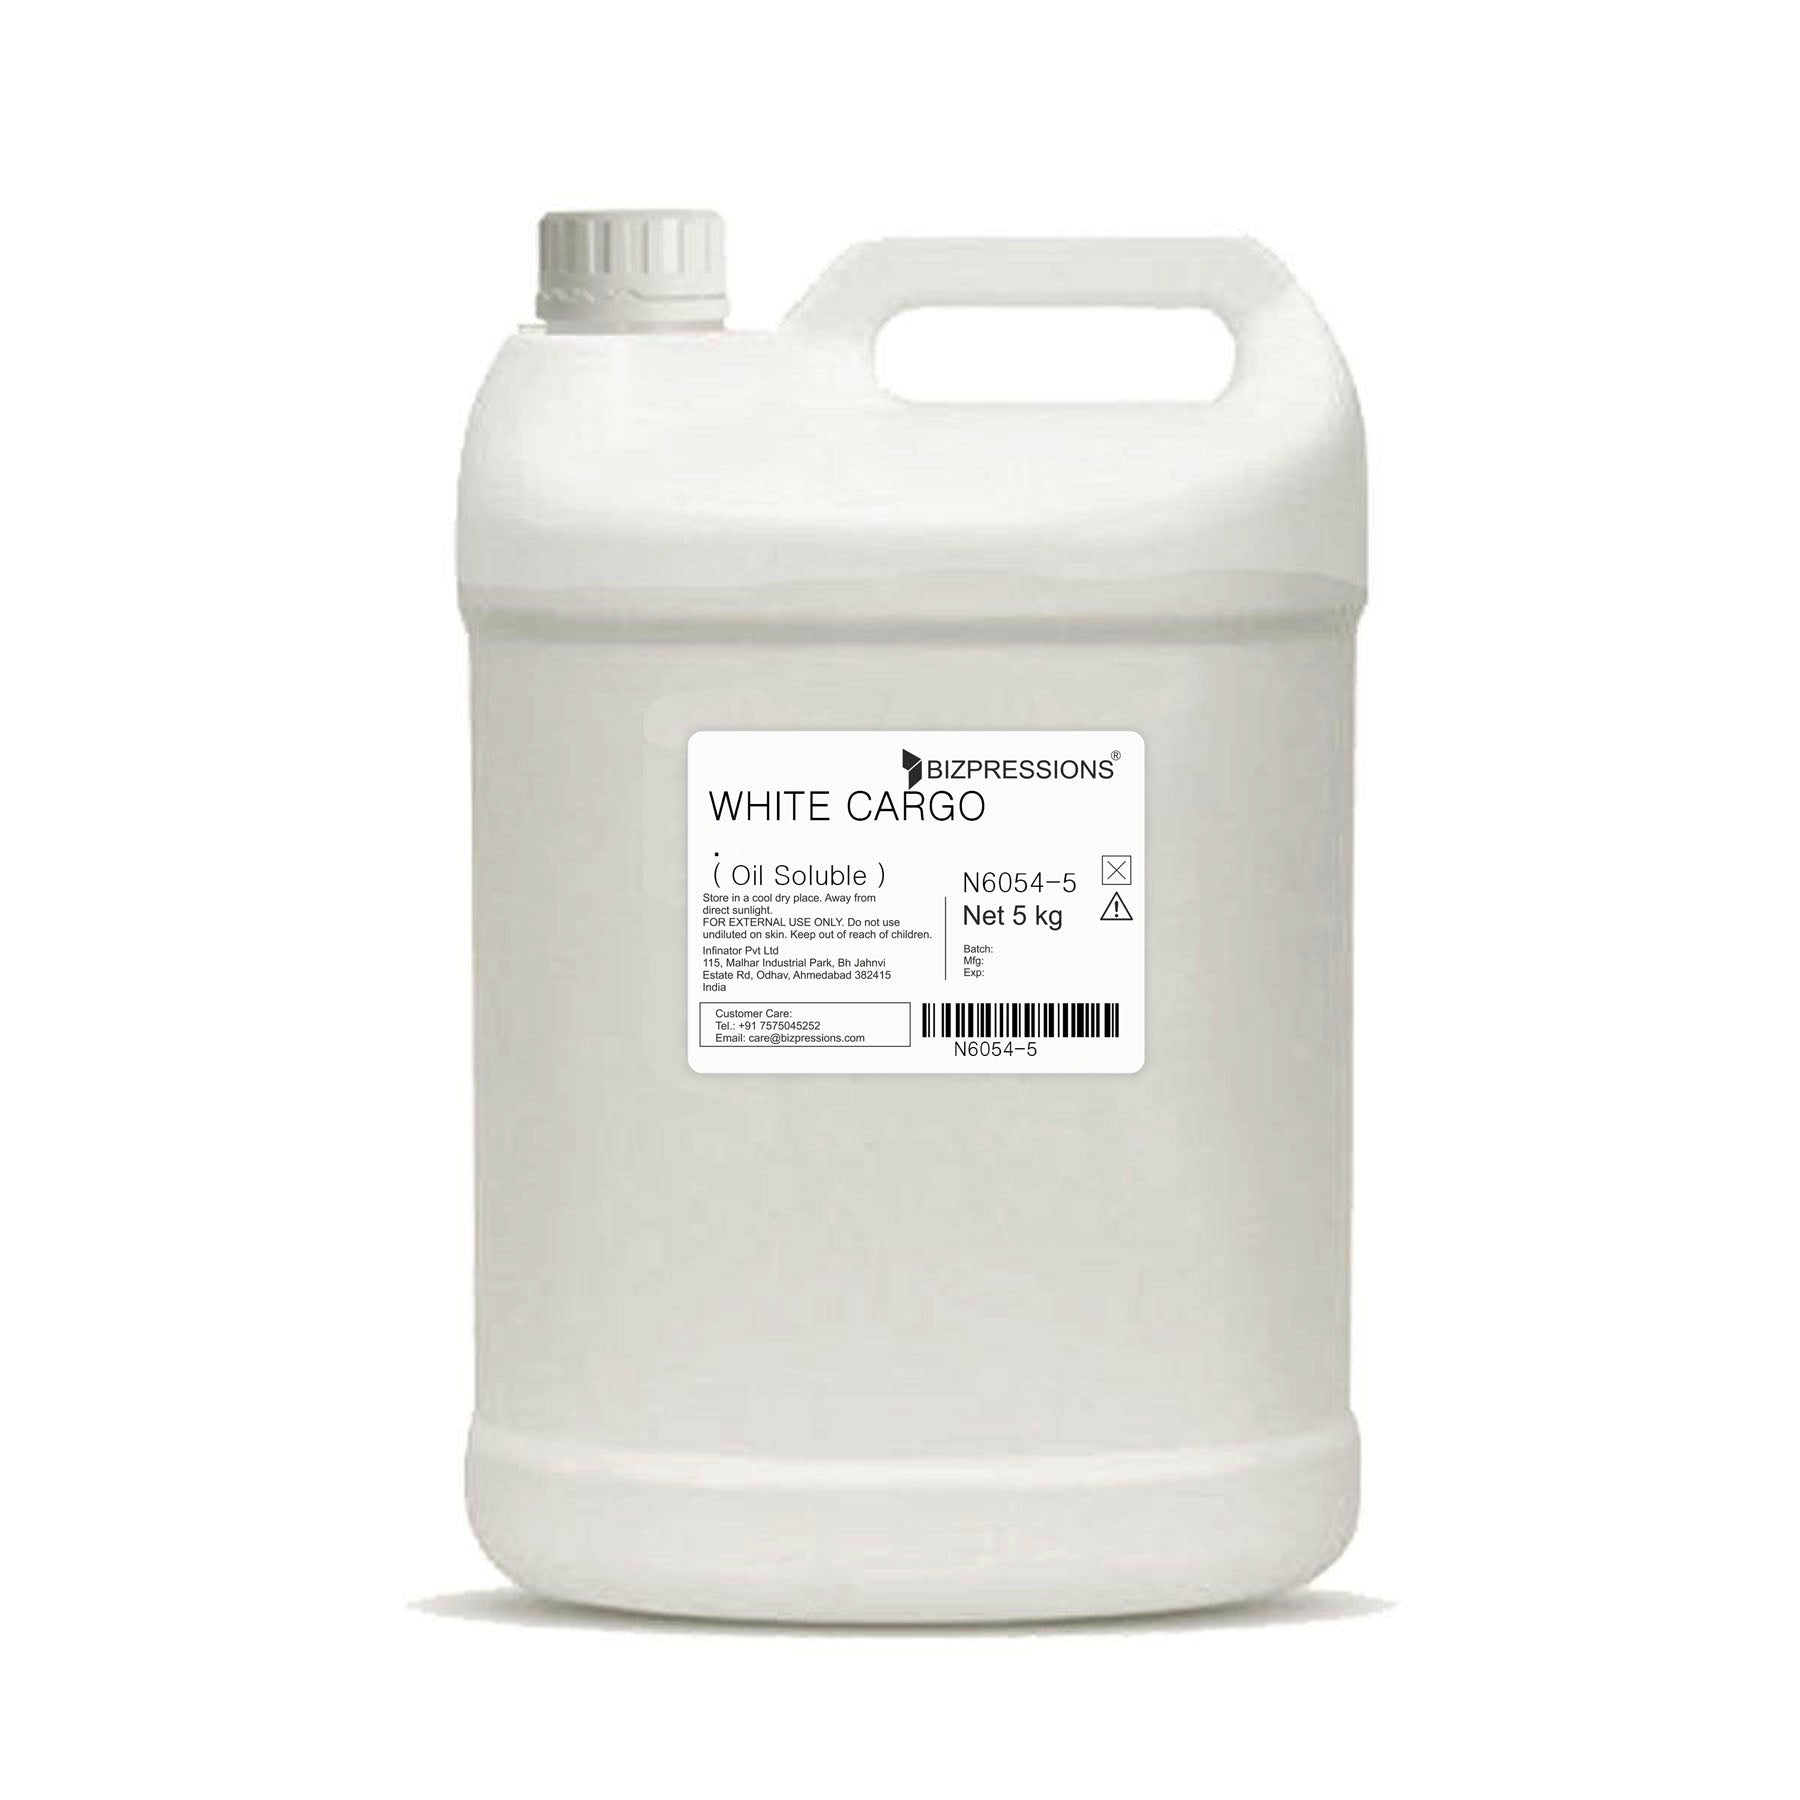 WHITE CARGO - Fragrance ( Oil Soluble ) - 5 kg